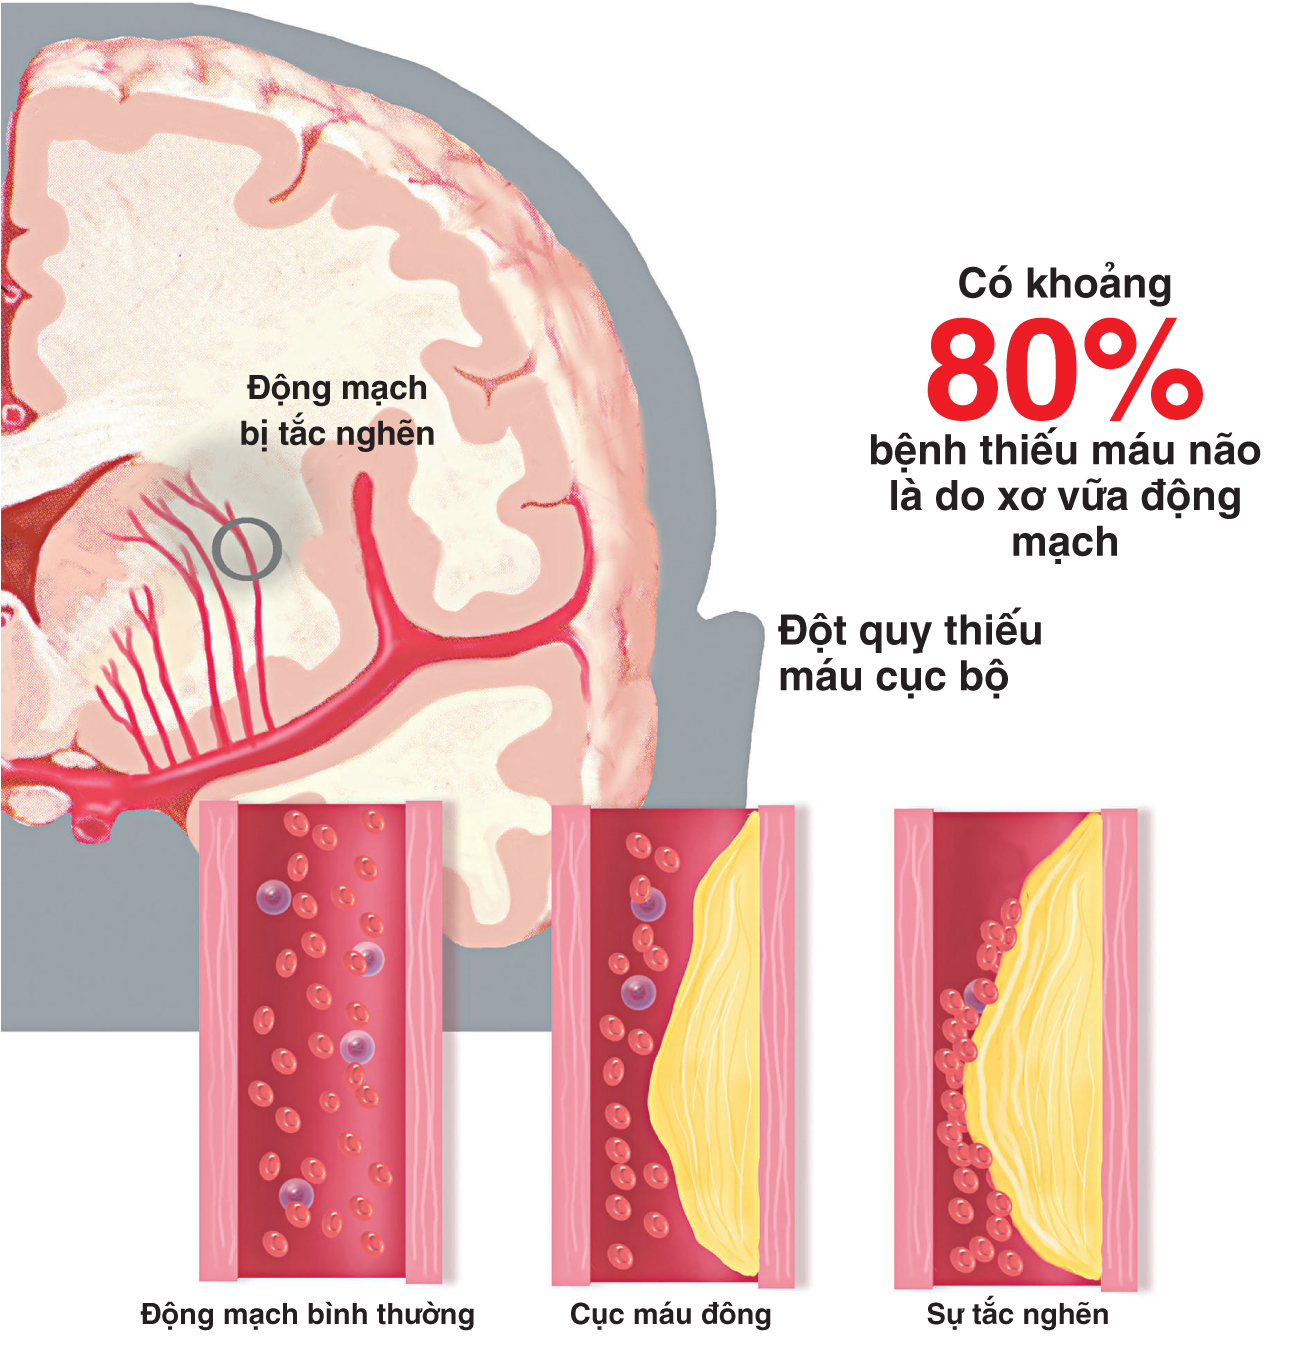  Thiểu năng tuần hoàn não là căn bệnh nguy hiểm - Ảnh minh họa: Internet